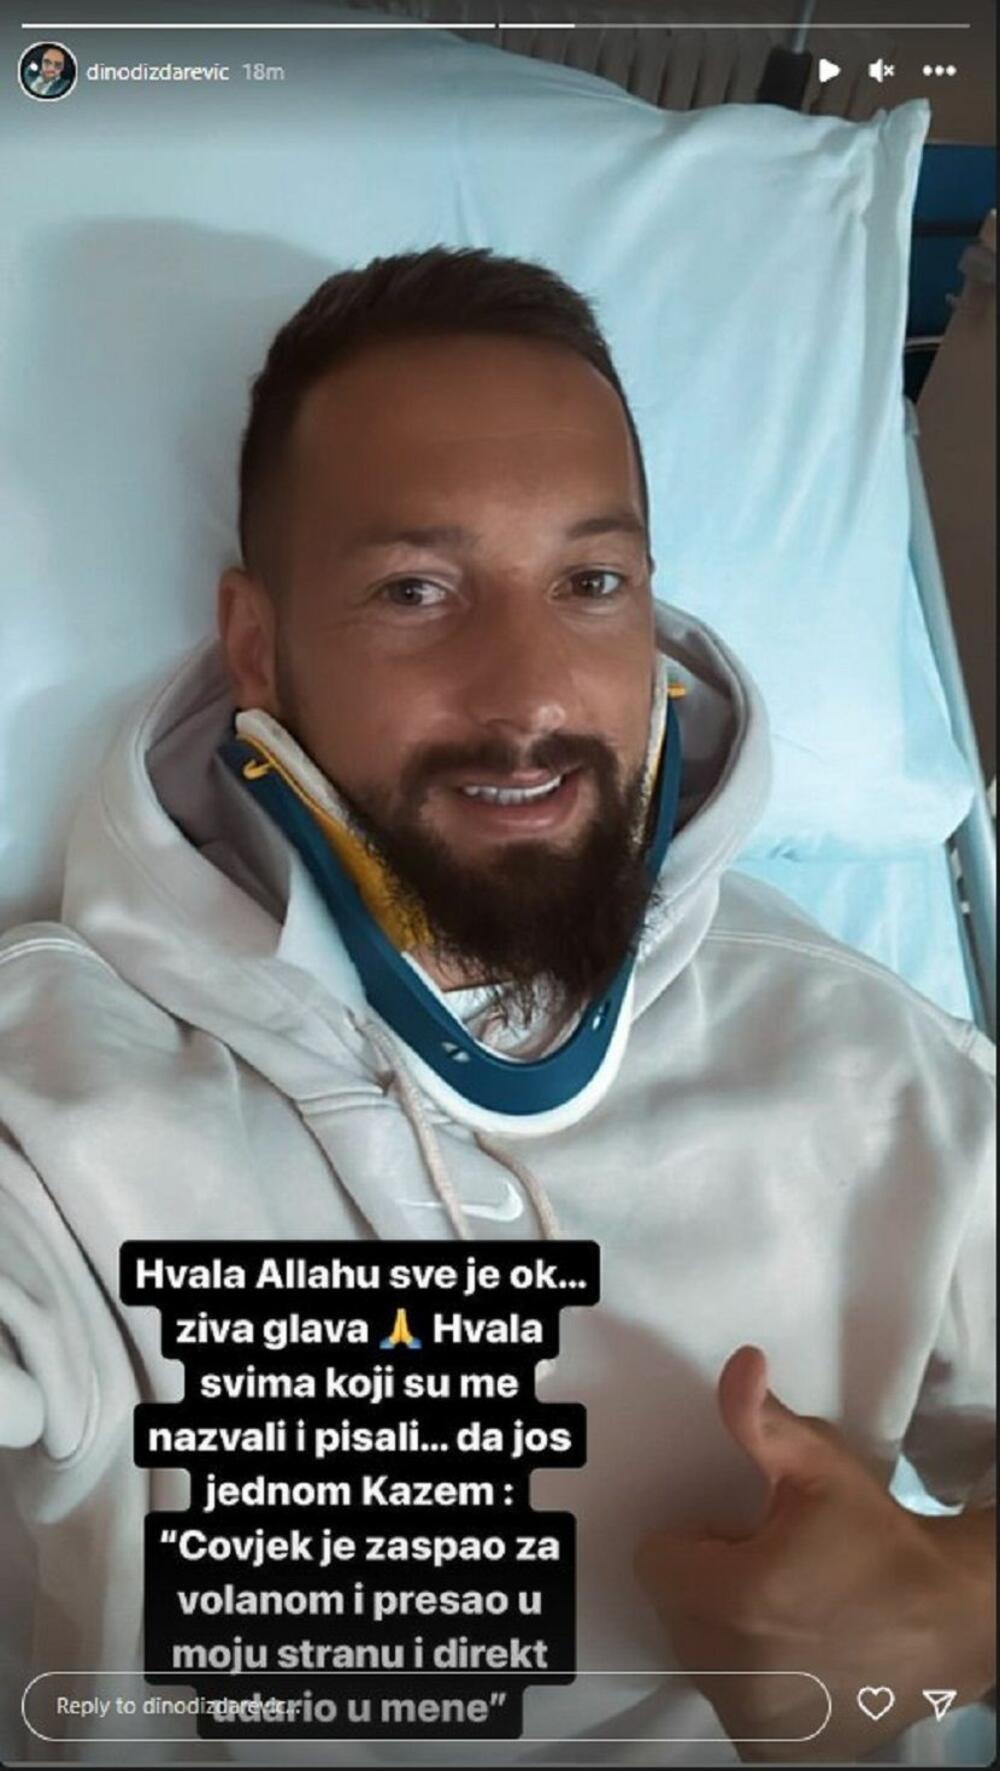 Dizdarević se oglasio za medije, te je otkrio da se nalazi u bolnici, da doktori vrše sve potrebne analize, ali da je u stabilnom stanju.